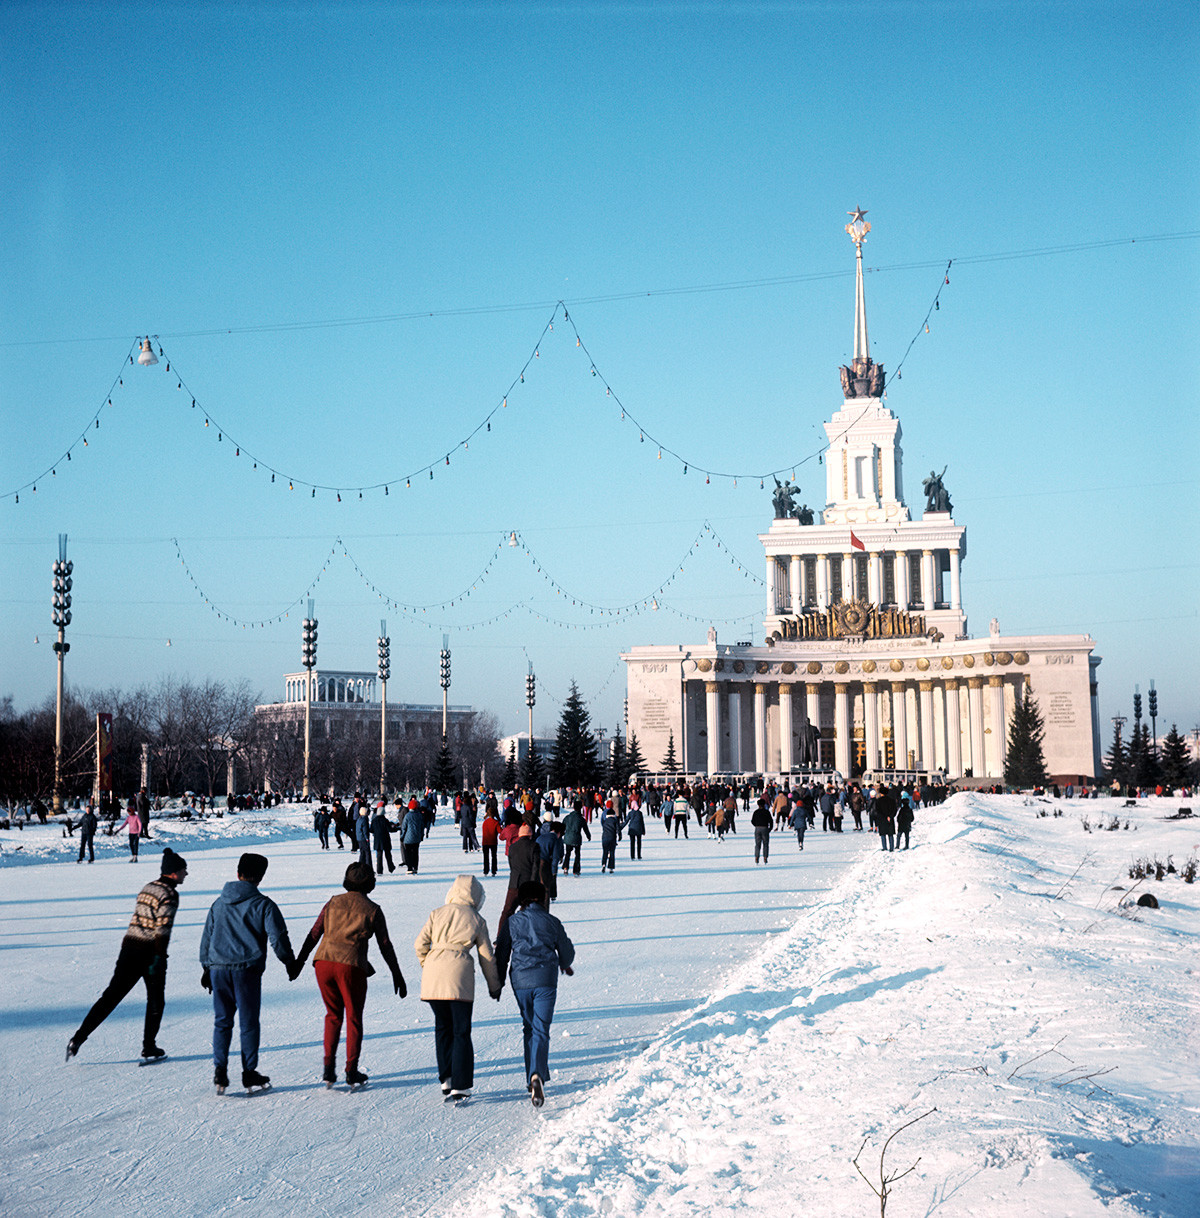 Eislaufen auf dem Territorium des WDNCh-Ausstellungszentrums, 1974